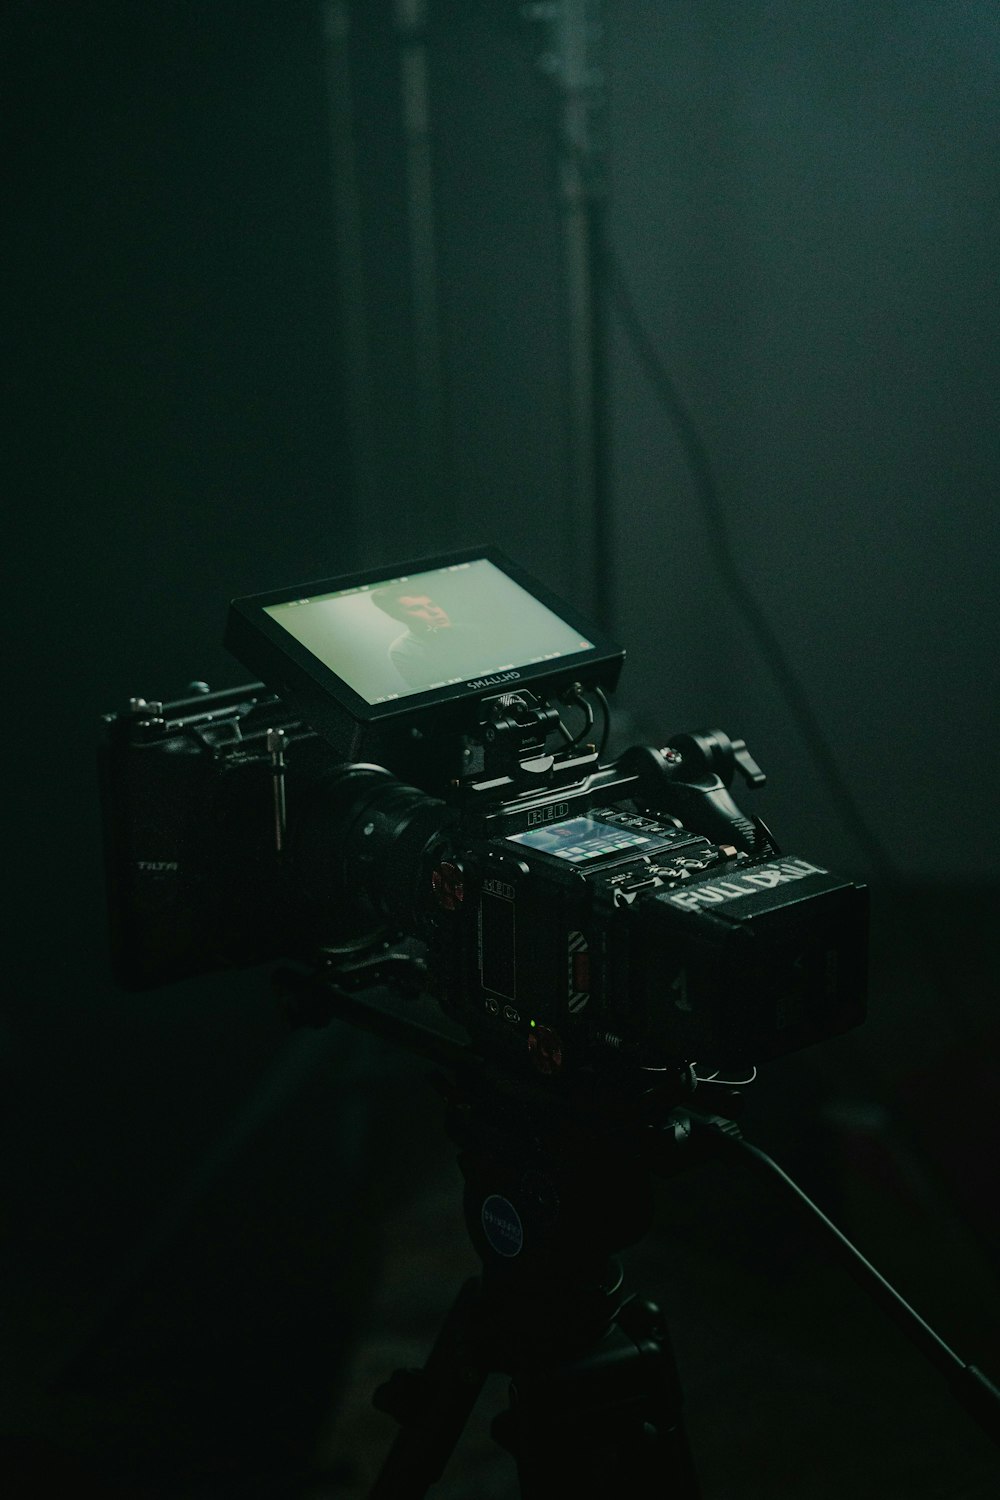 Una cámara instalada en una habitación oscura